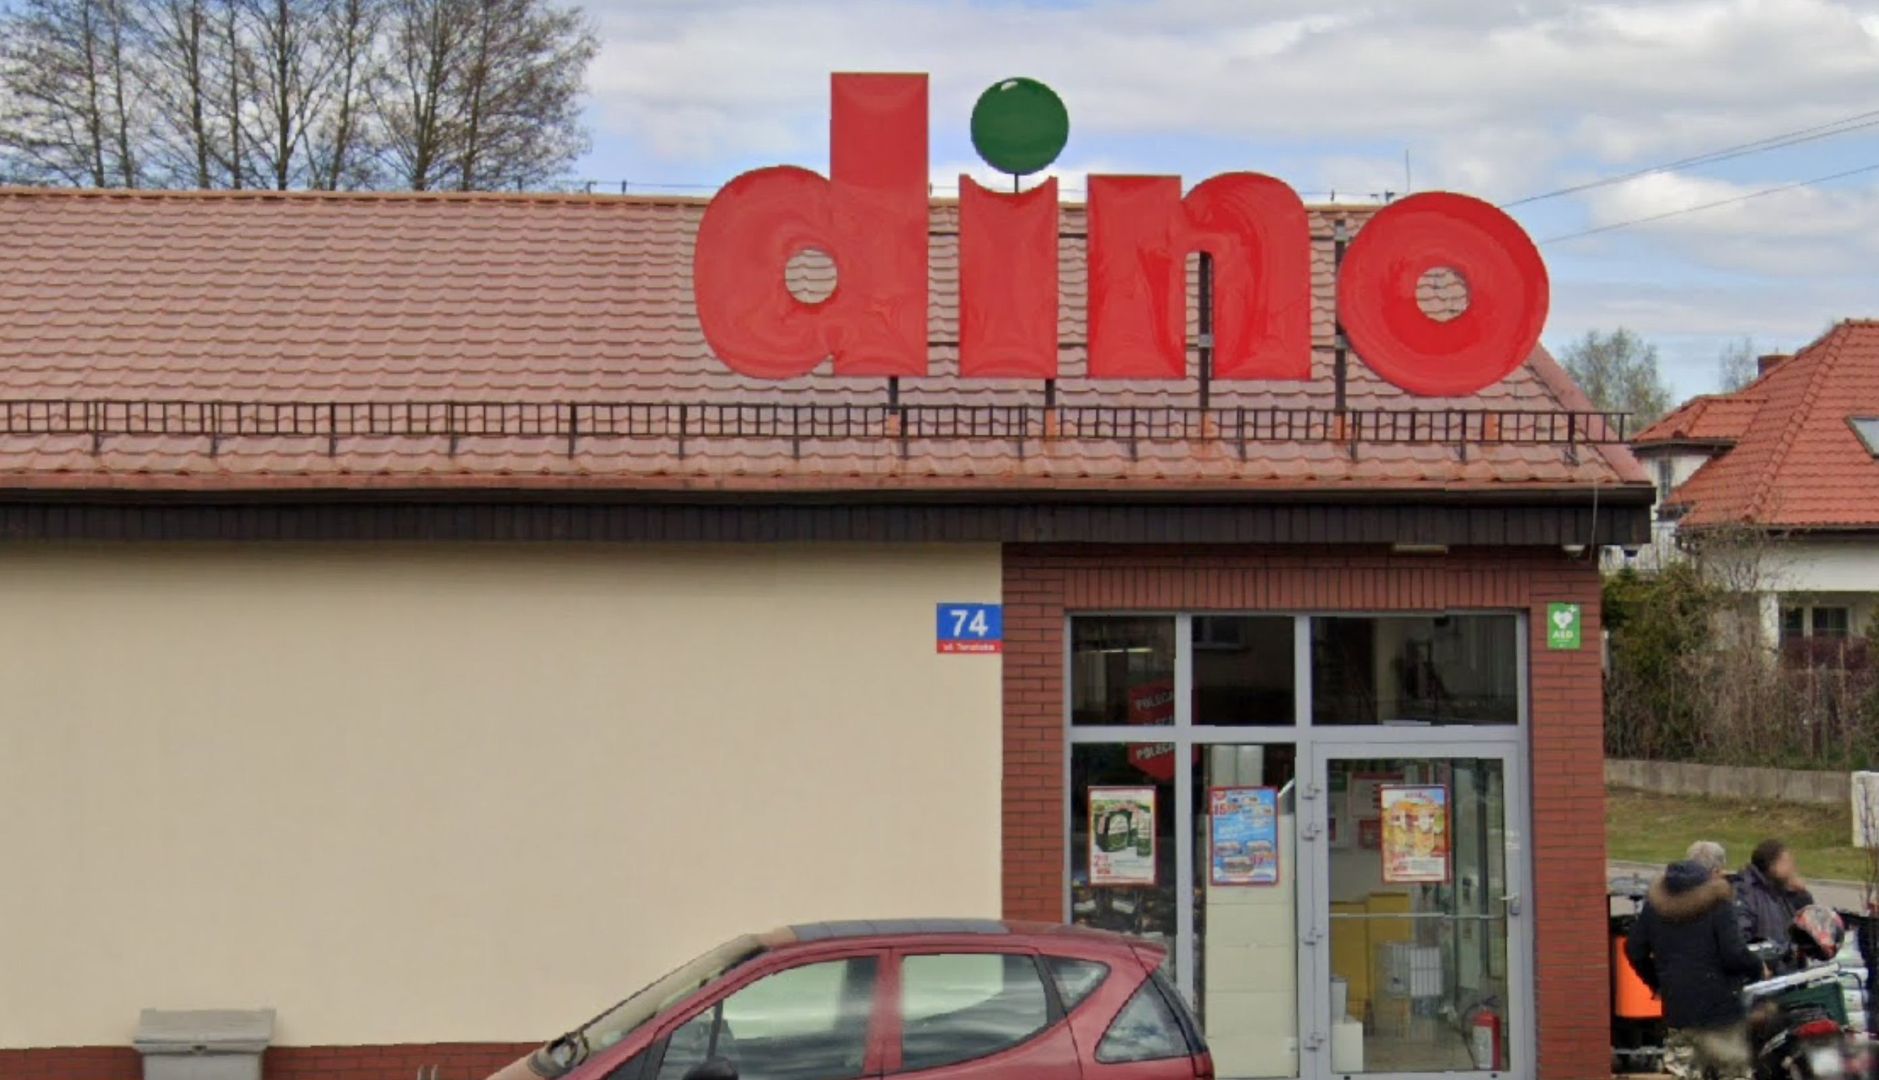 Zaczęło się w Dino. Polacy będą szturmować sklepy?